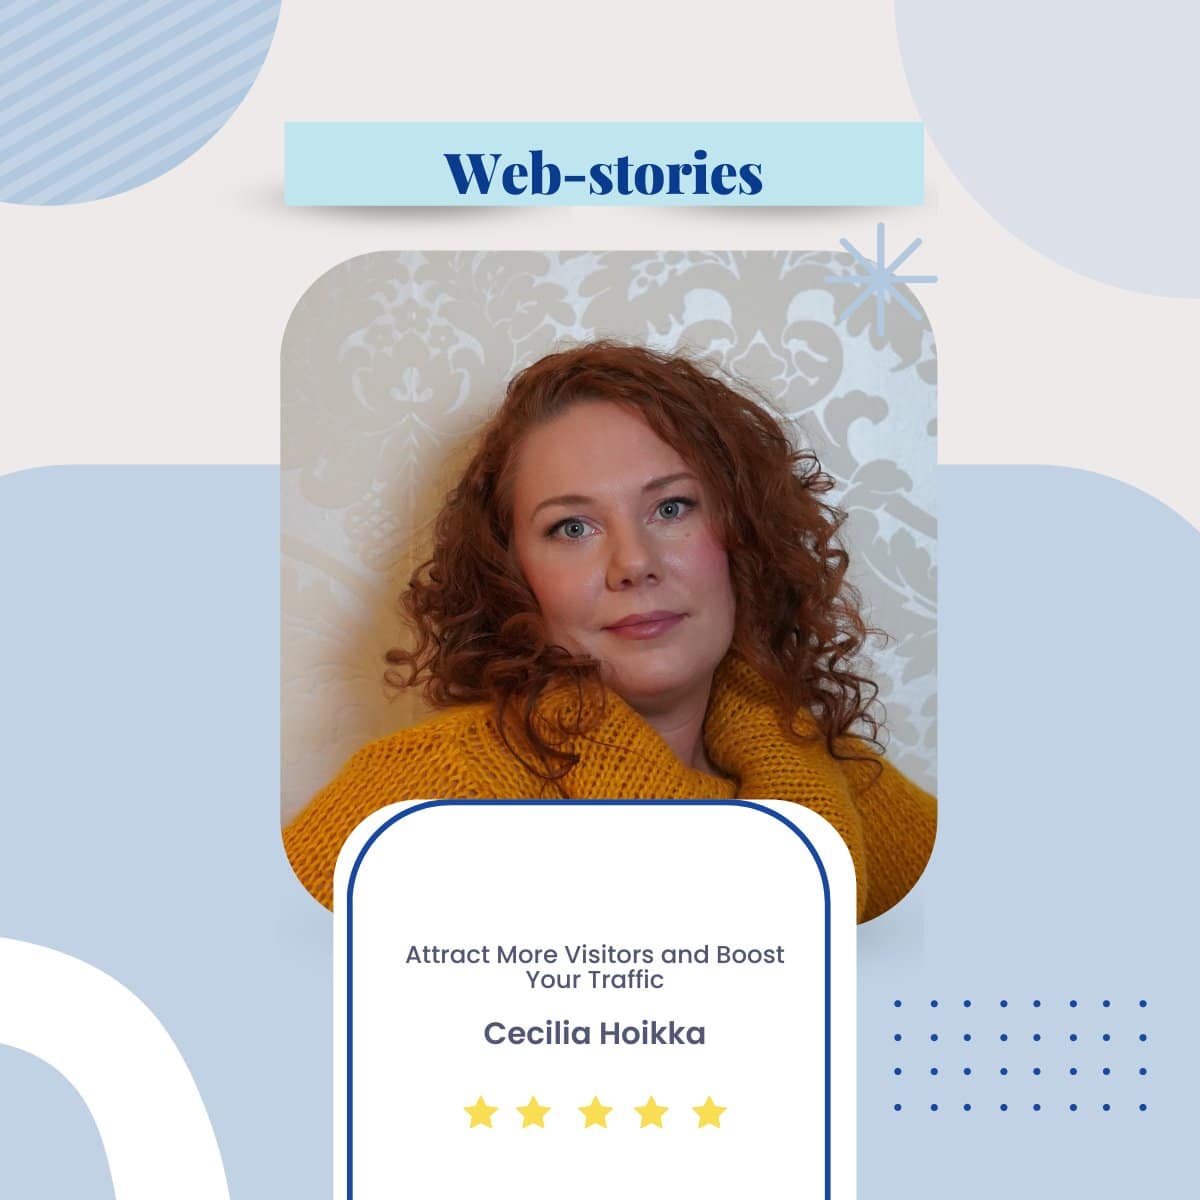 web-story-creator-cecilia